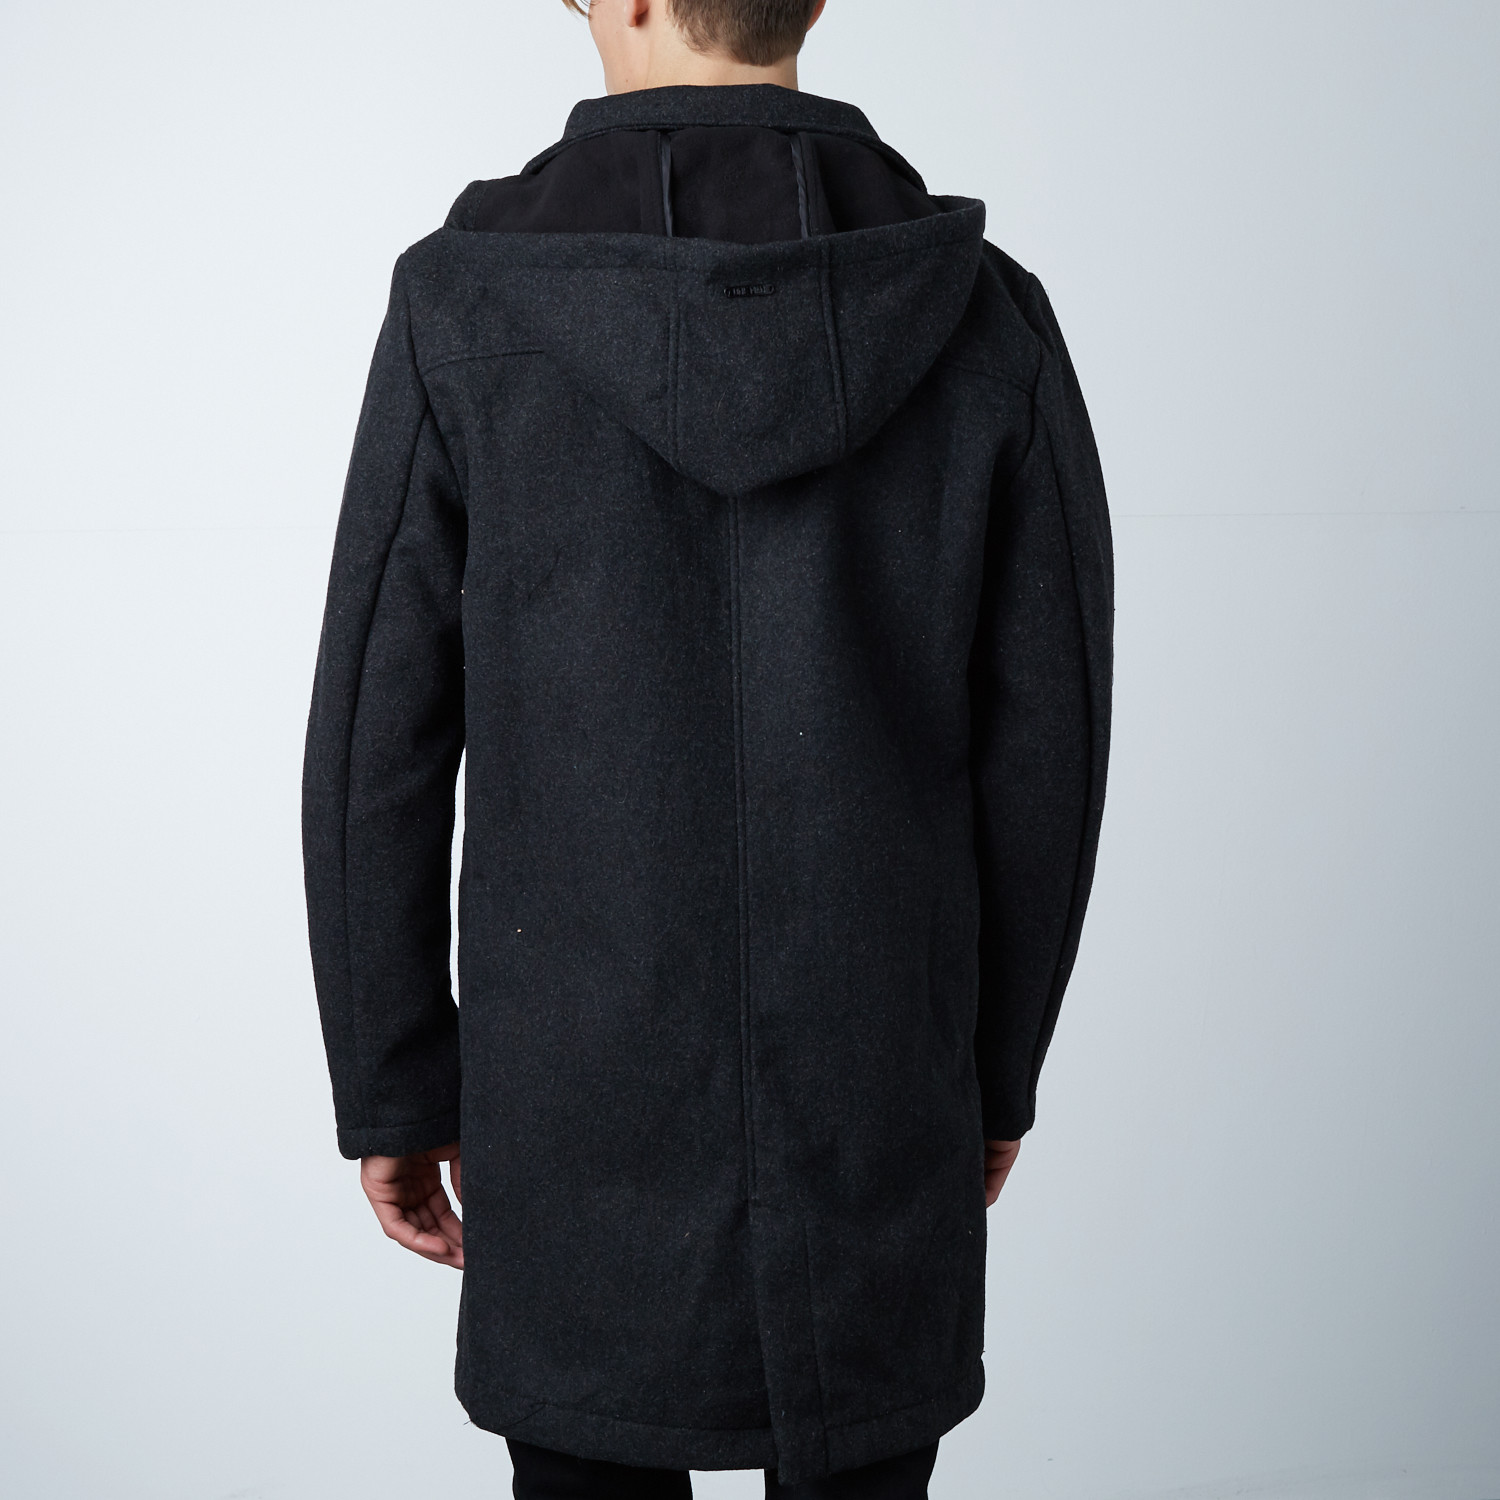 One Man Alex Waterproof Wool Coat // Black (S) - One Man Outerwear ...